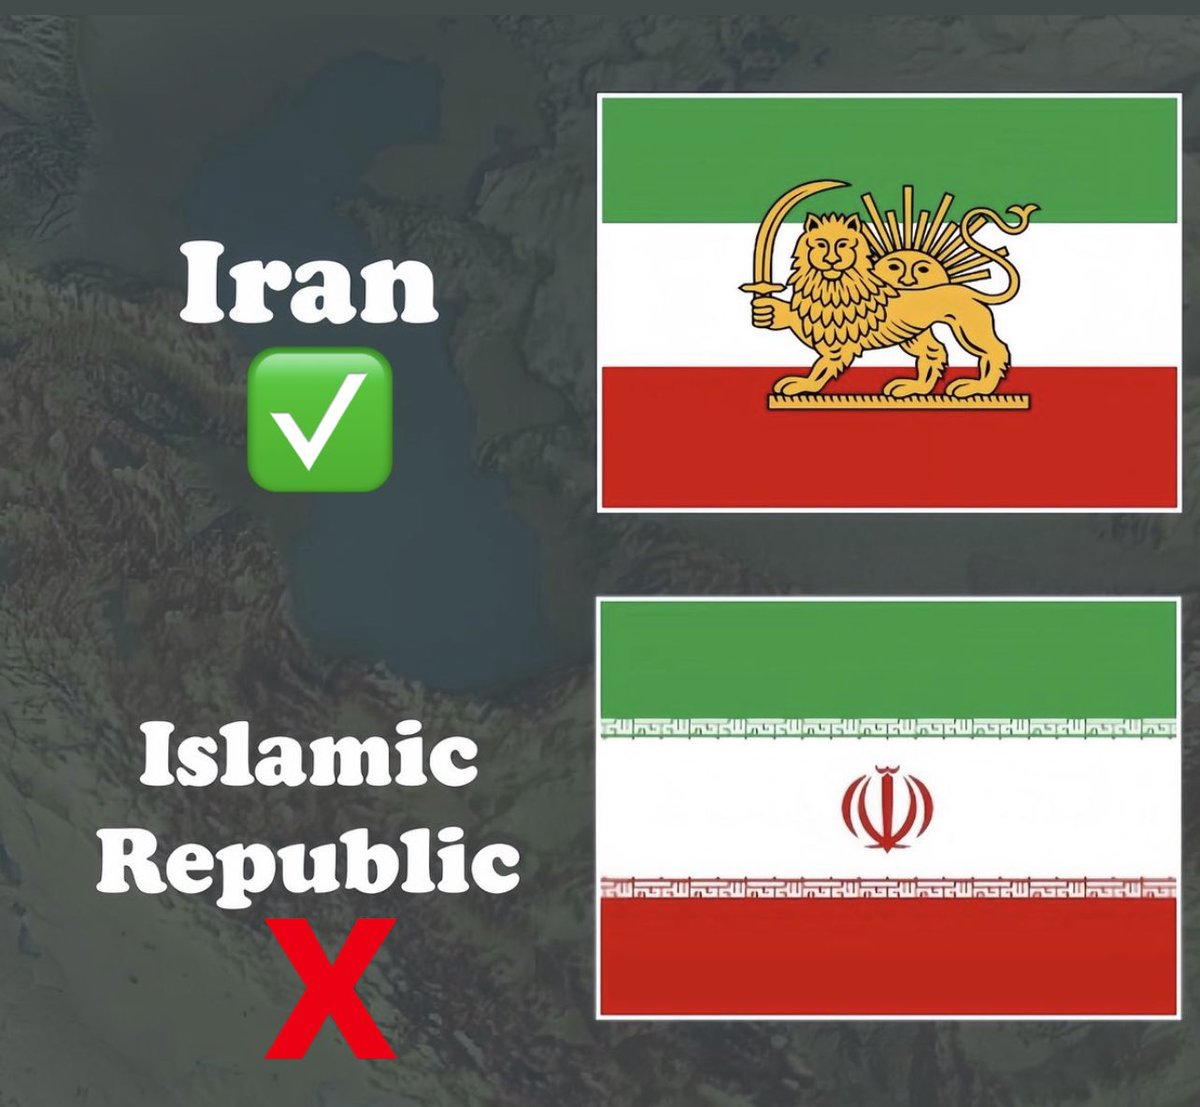 S’il vous plaît n’utilisez pas le drapeau que vous propose votre téléphone quand vous tapez Iran. C’est le drapeau de la république islamique. Nous n’avons qu’un drapeau et il a un lion et un Soleil dessus. L’autre a été créé par les ayatollahs et ne sera jamais le nôtre